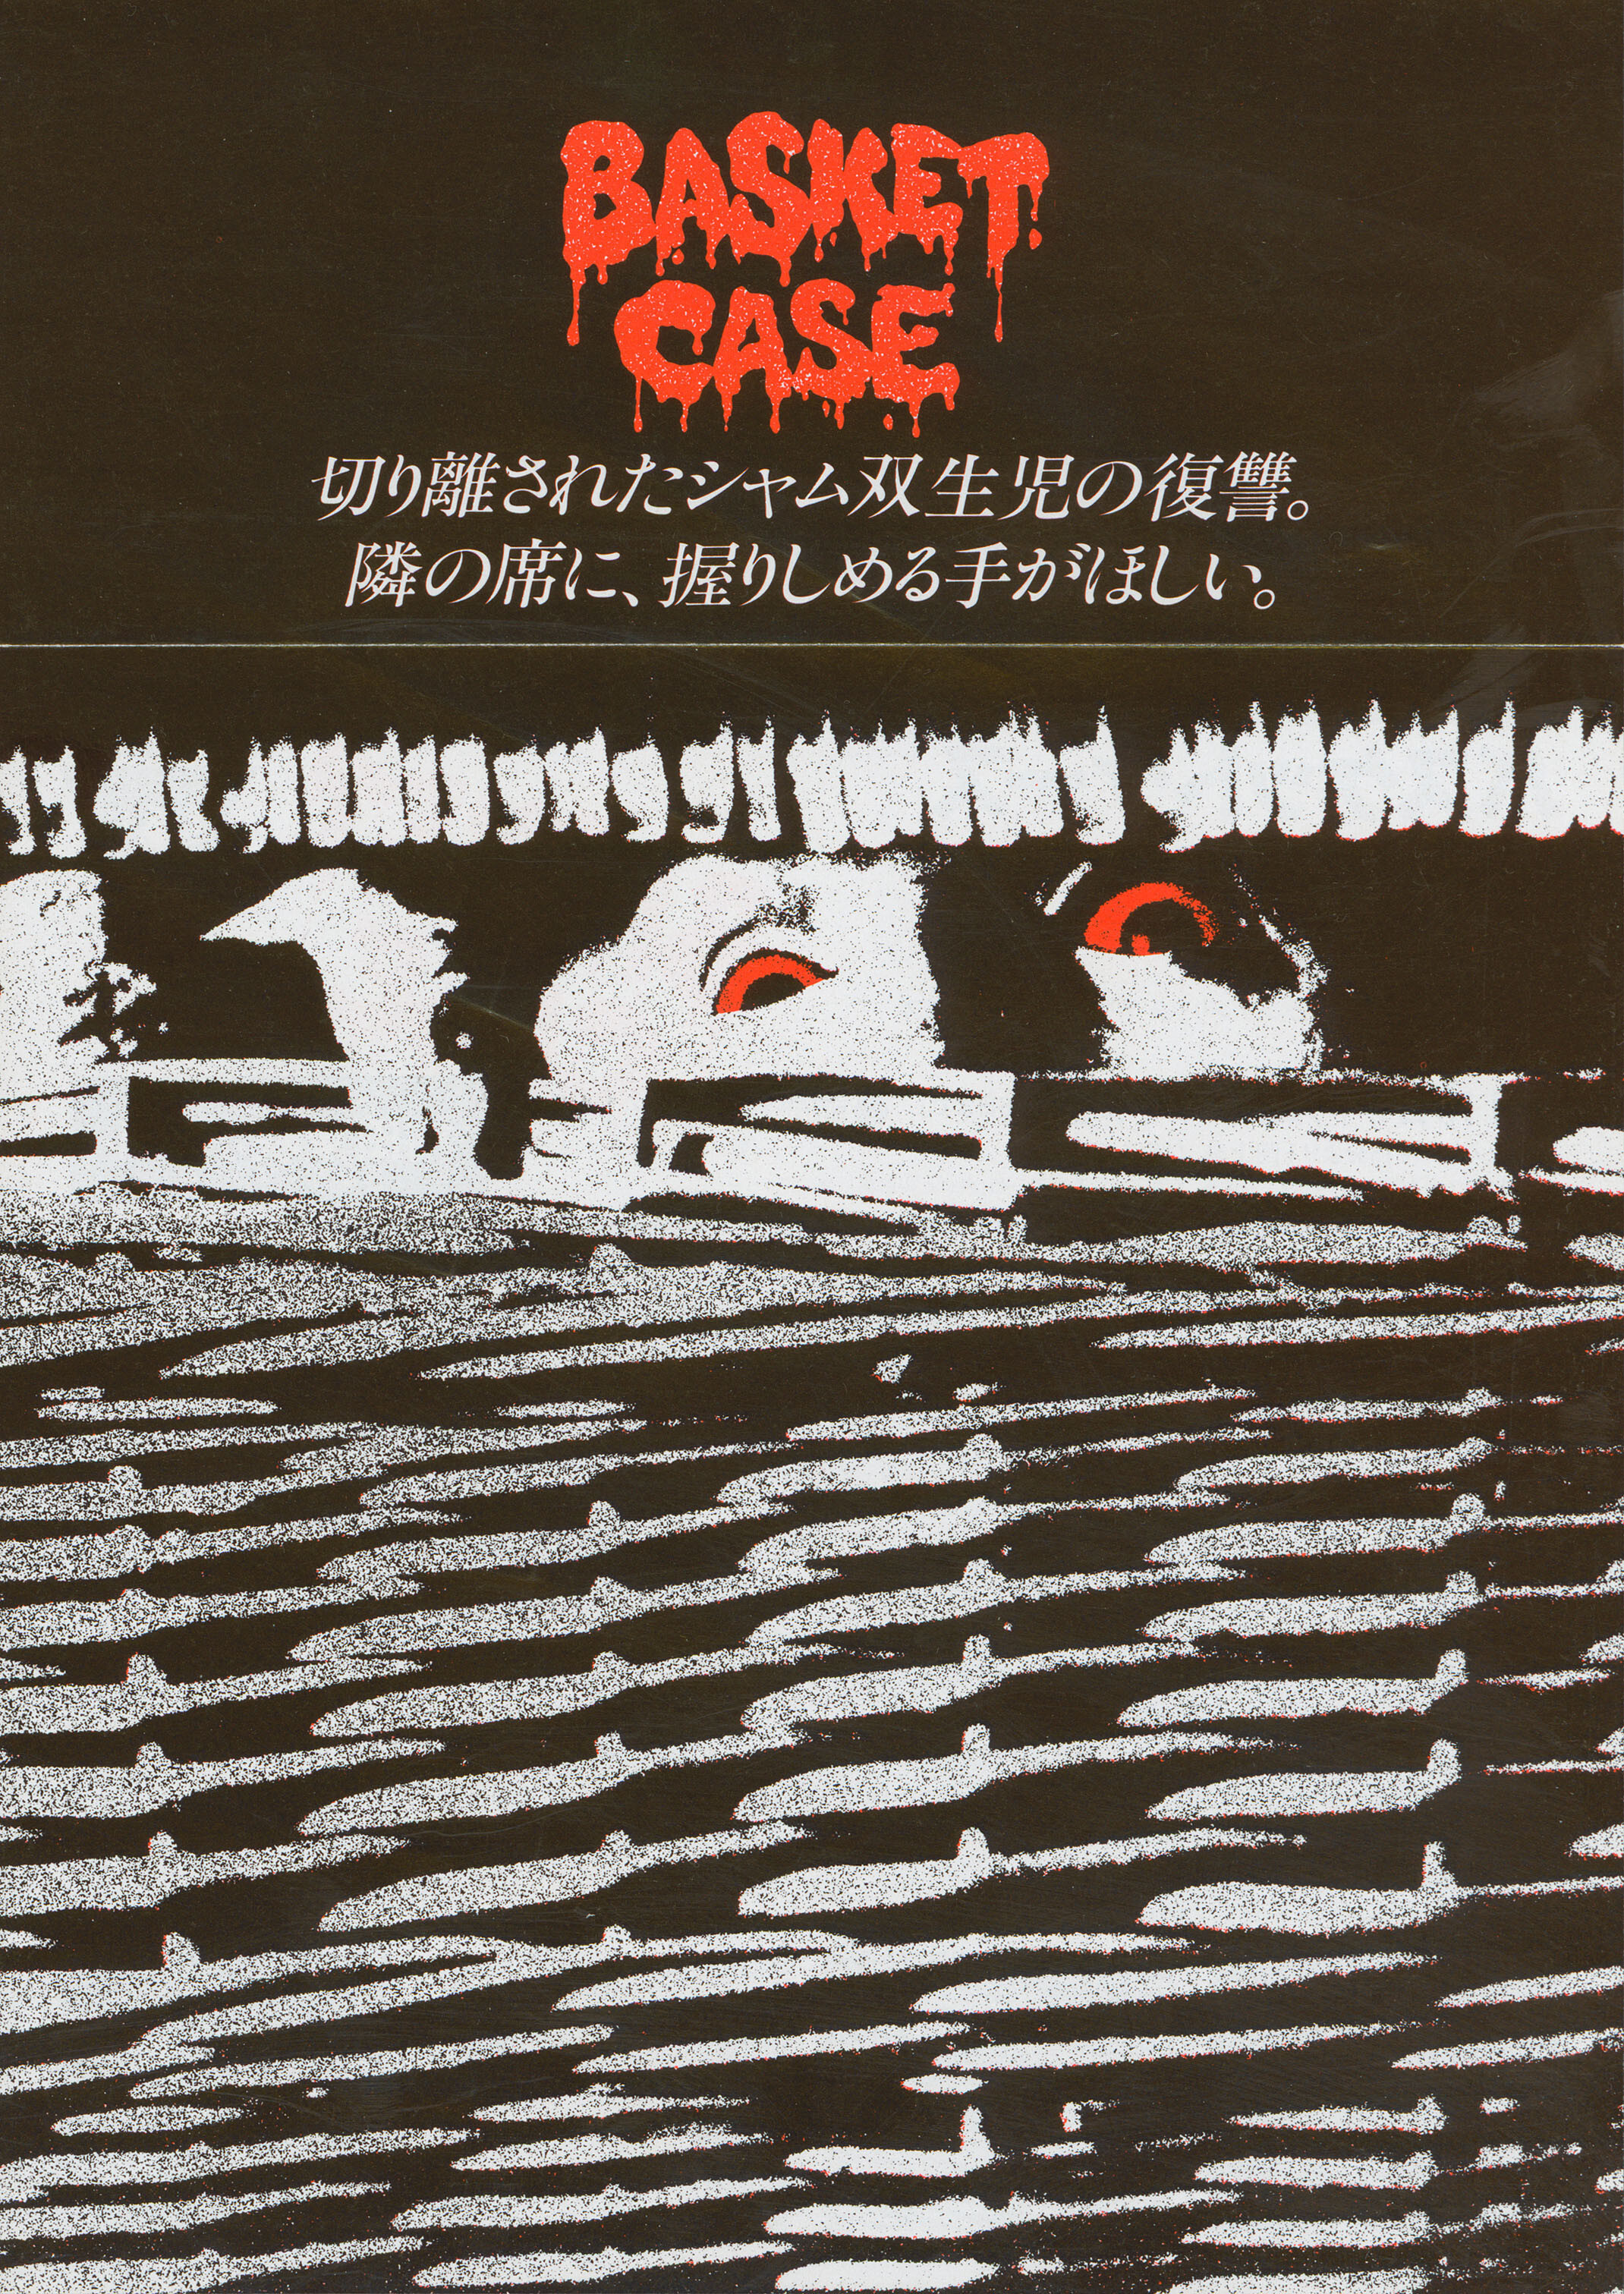 Существо в корзине (Basket Case, 1982), режиссёр Фрэнк Хененлоттер, японский постер к фильму (ужасы, 1985 год)